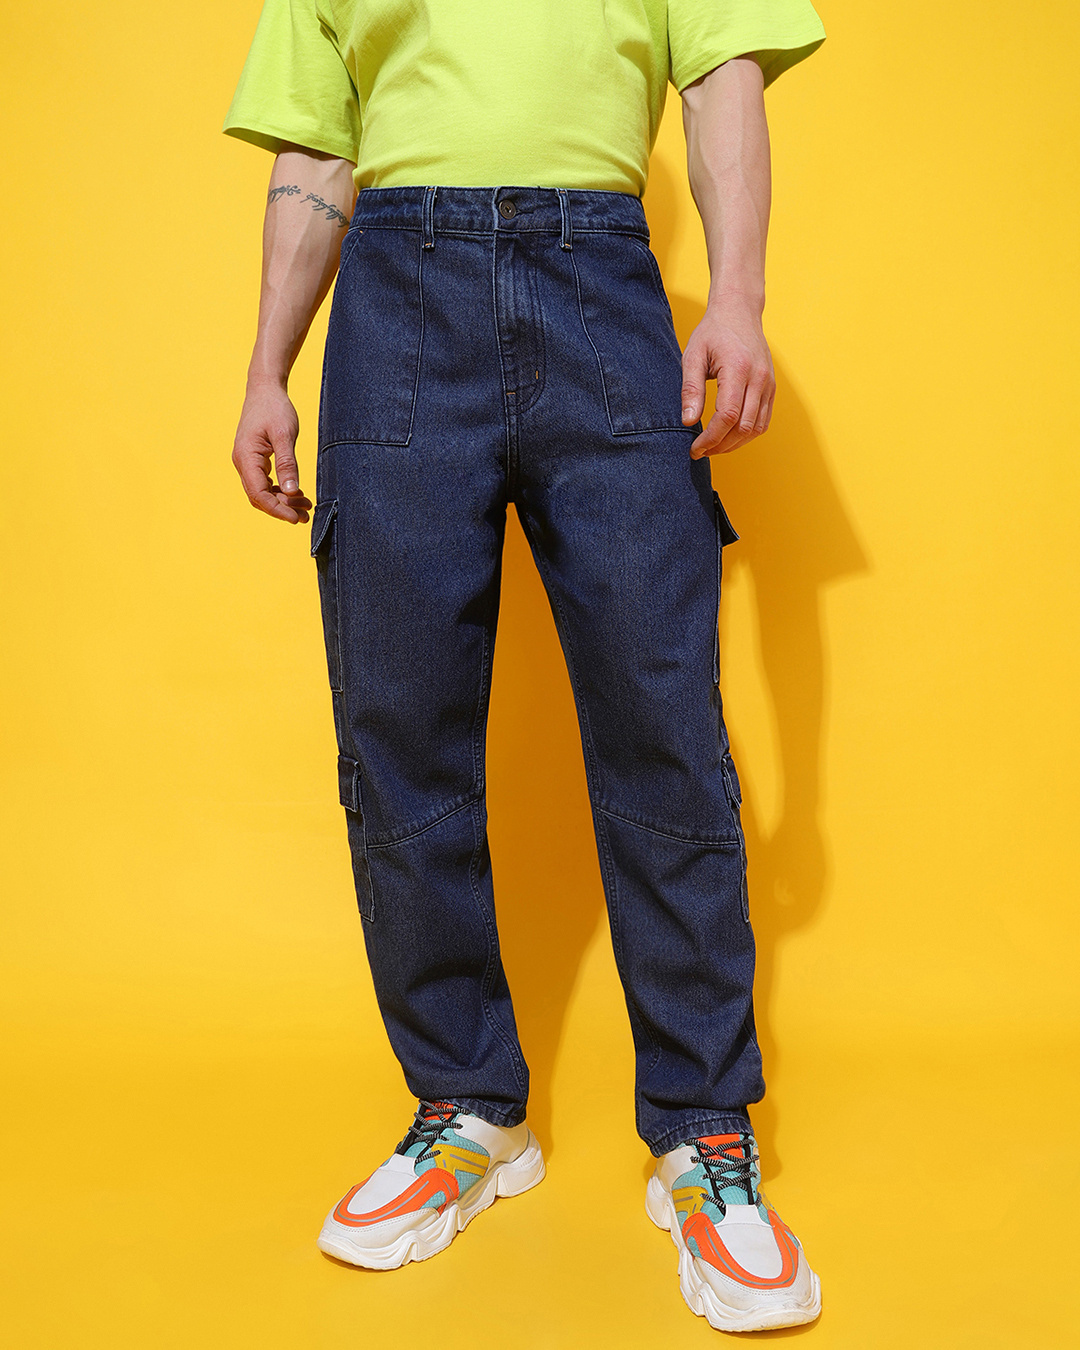 Buy Men's Blue Cargo Jeans Online at Bewakoof